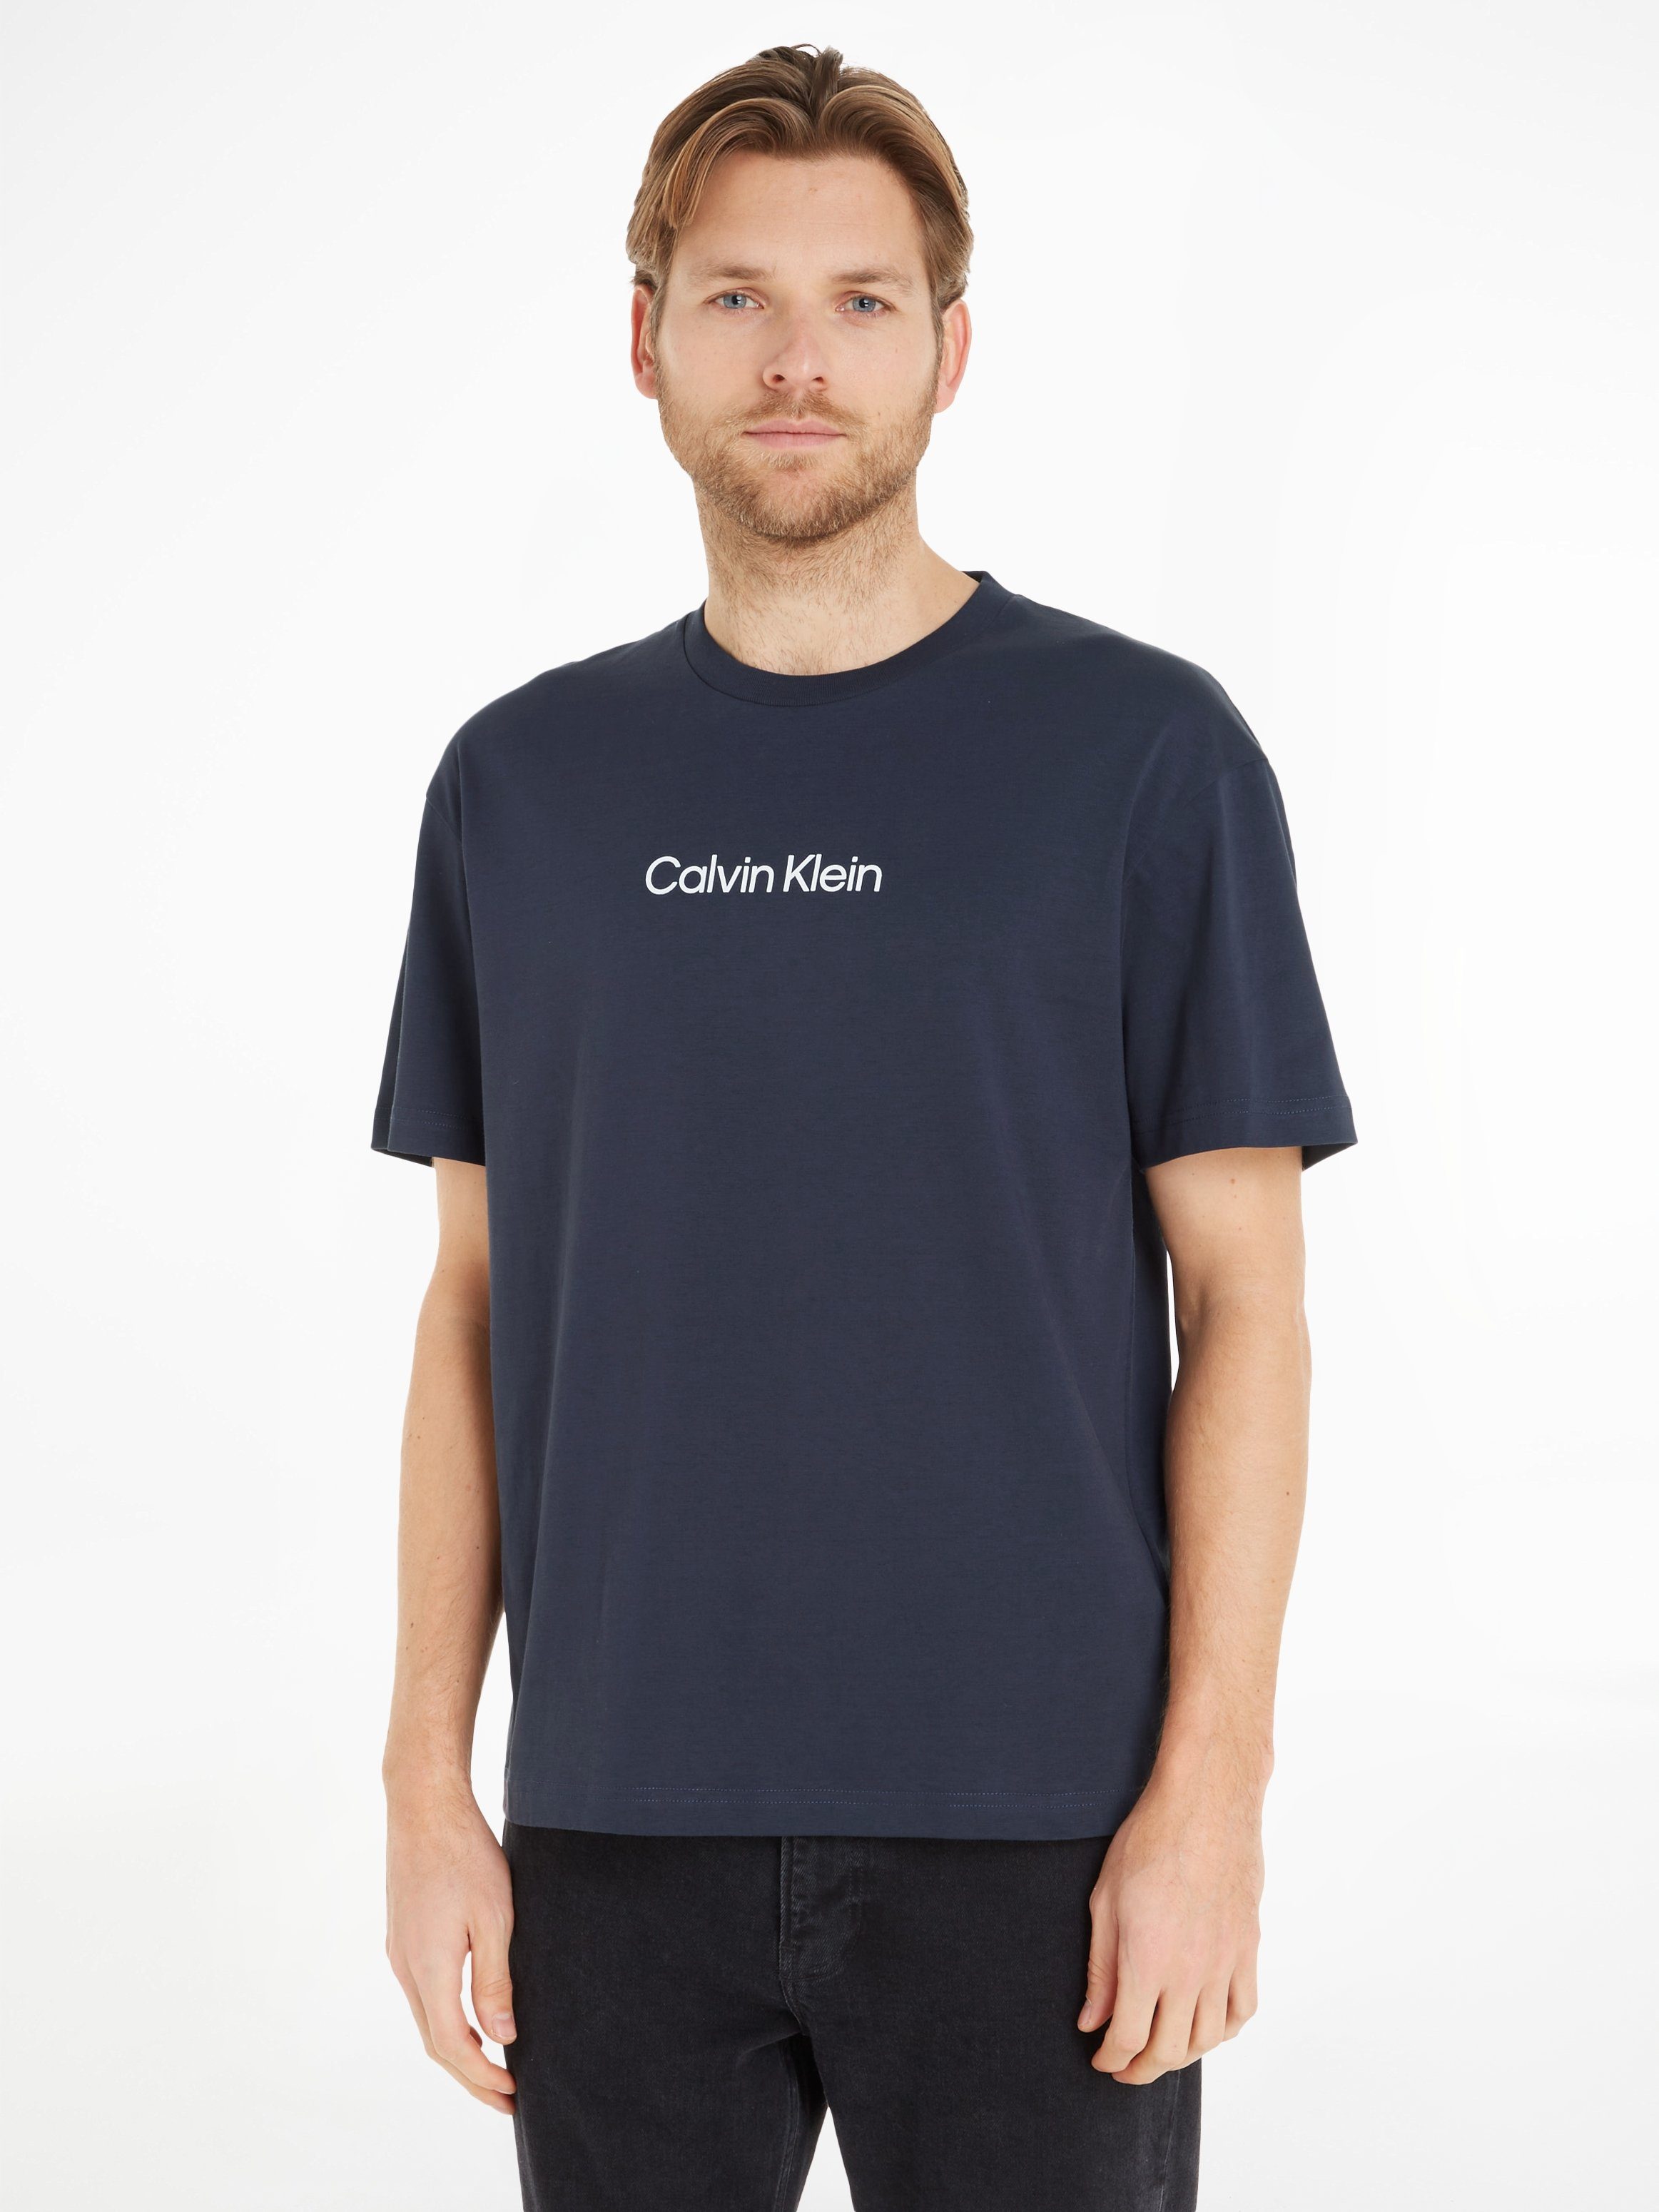 mit T-SHIRT Night T-Shirt Markenlabel Klein COMFORT Calvin Sky HERO aufgedrucktem LOGO